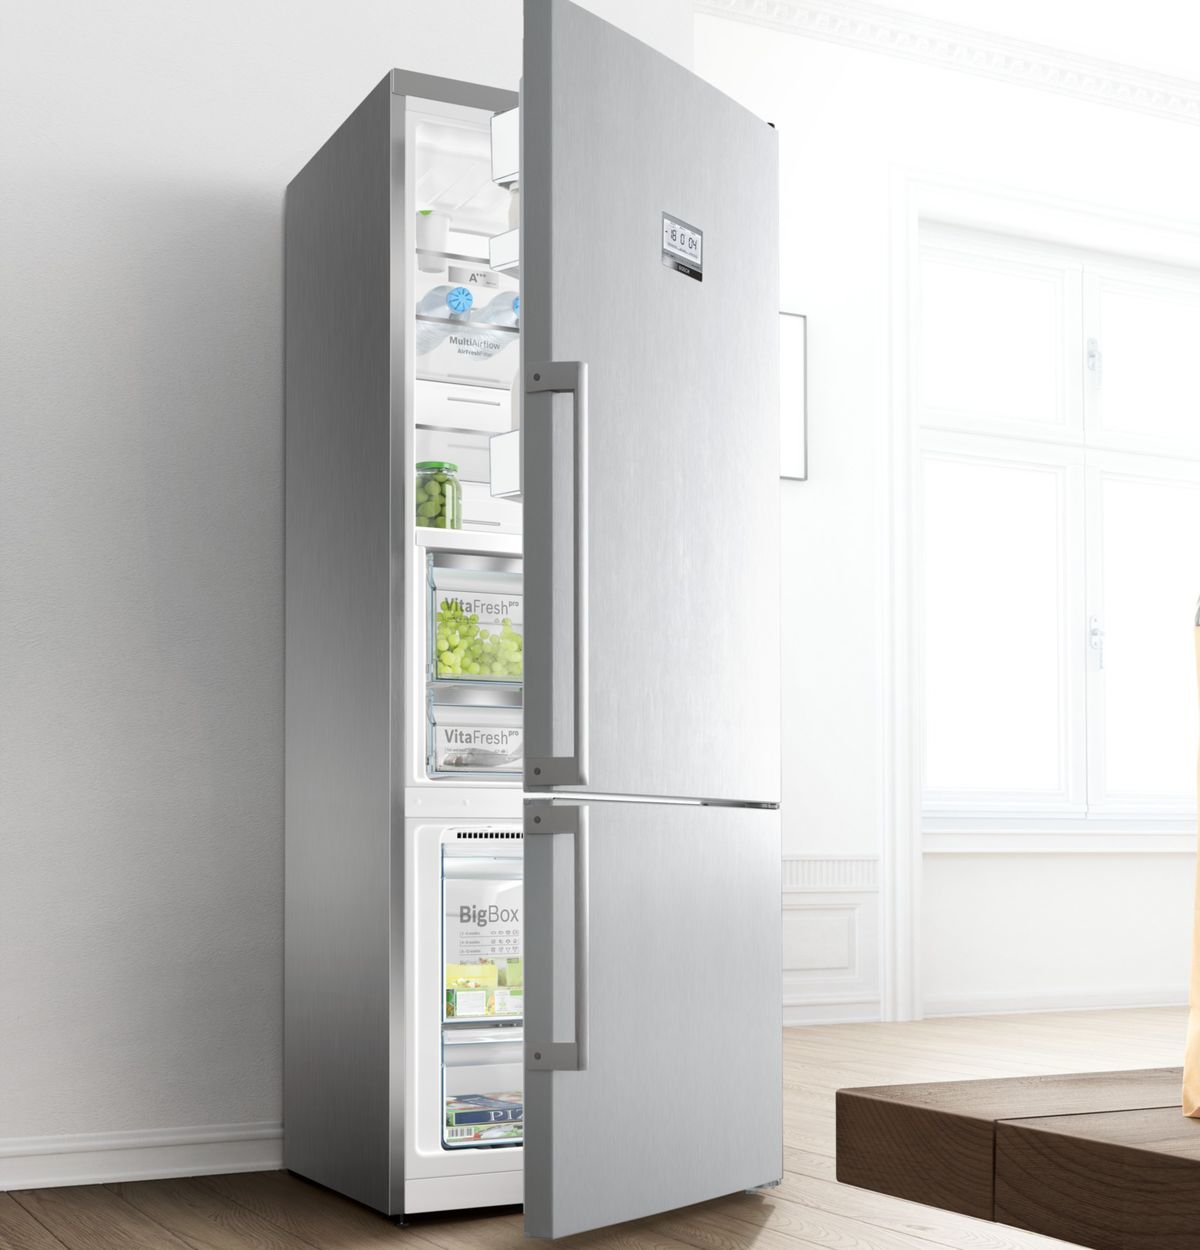 Esistono frigoriferi con wifi?